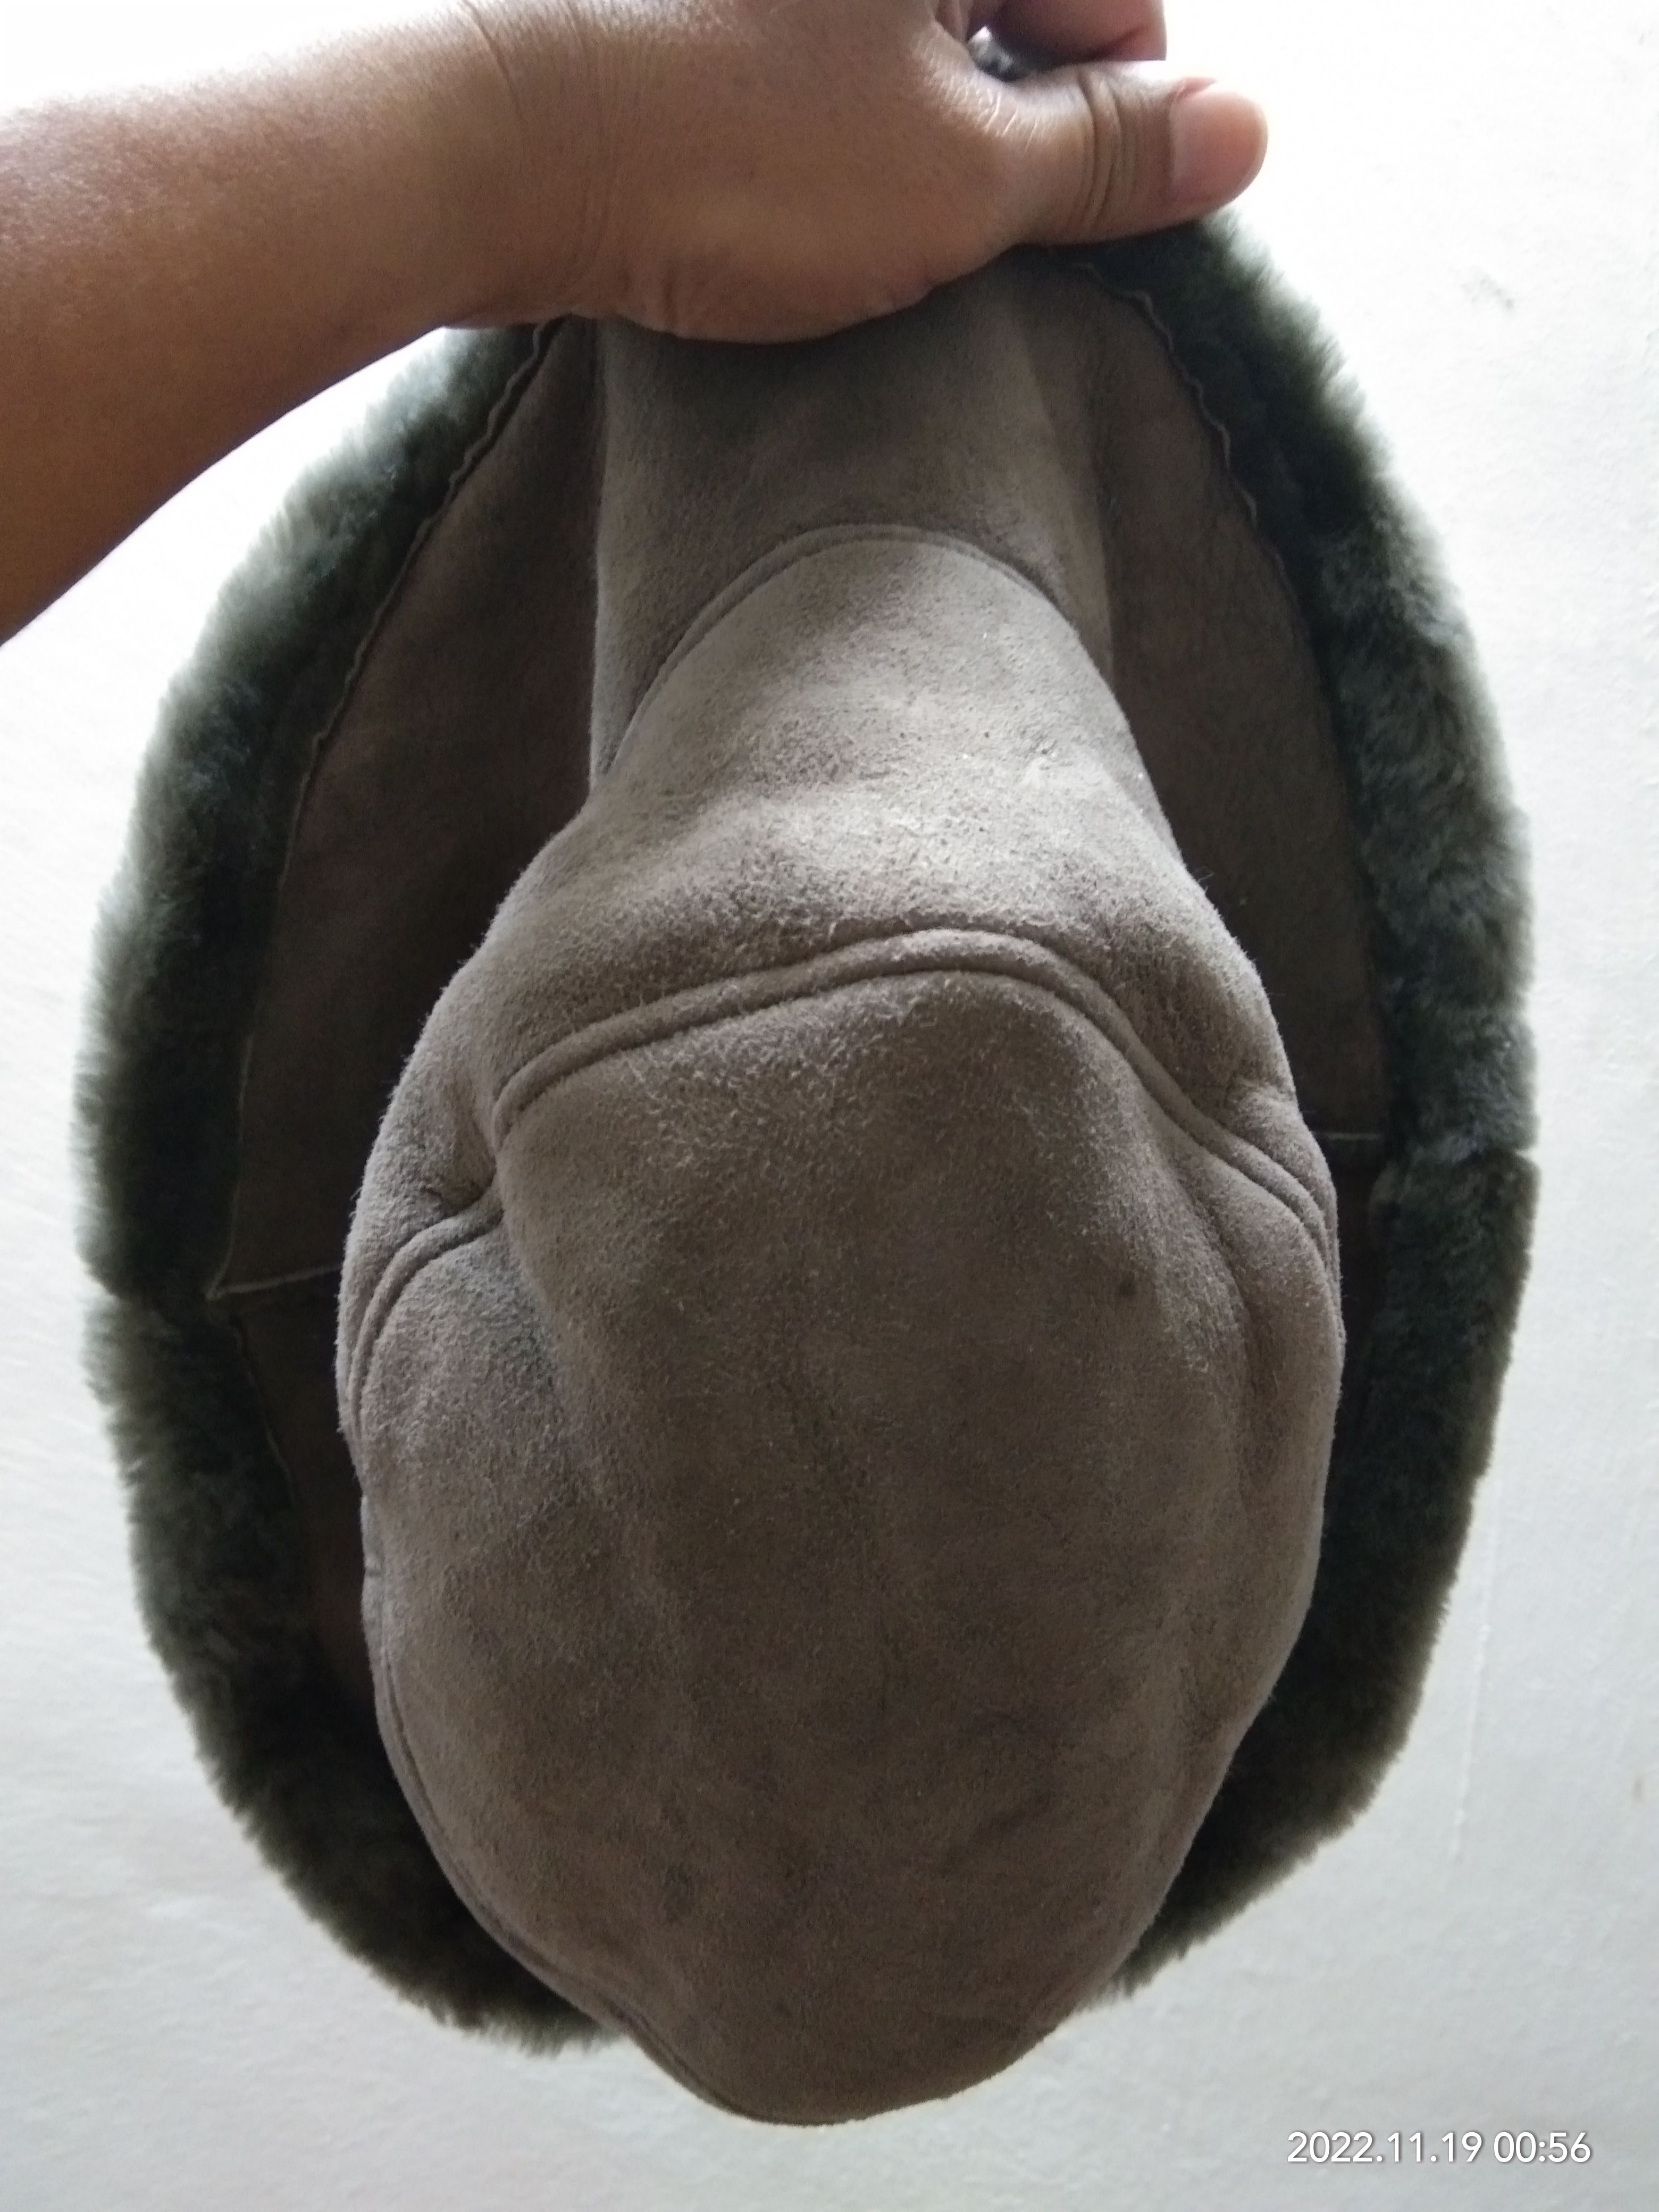 Leather - OWEN BARRY SHEEPSKIN HAT - 3